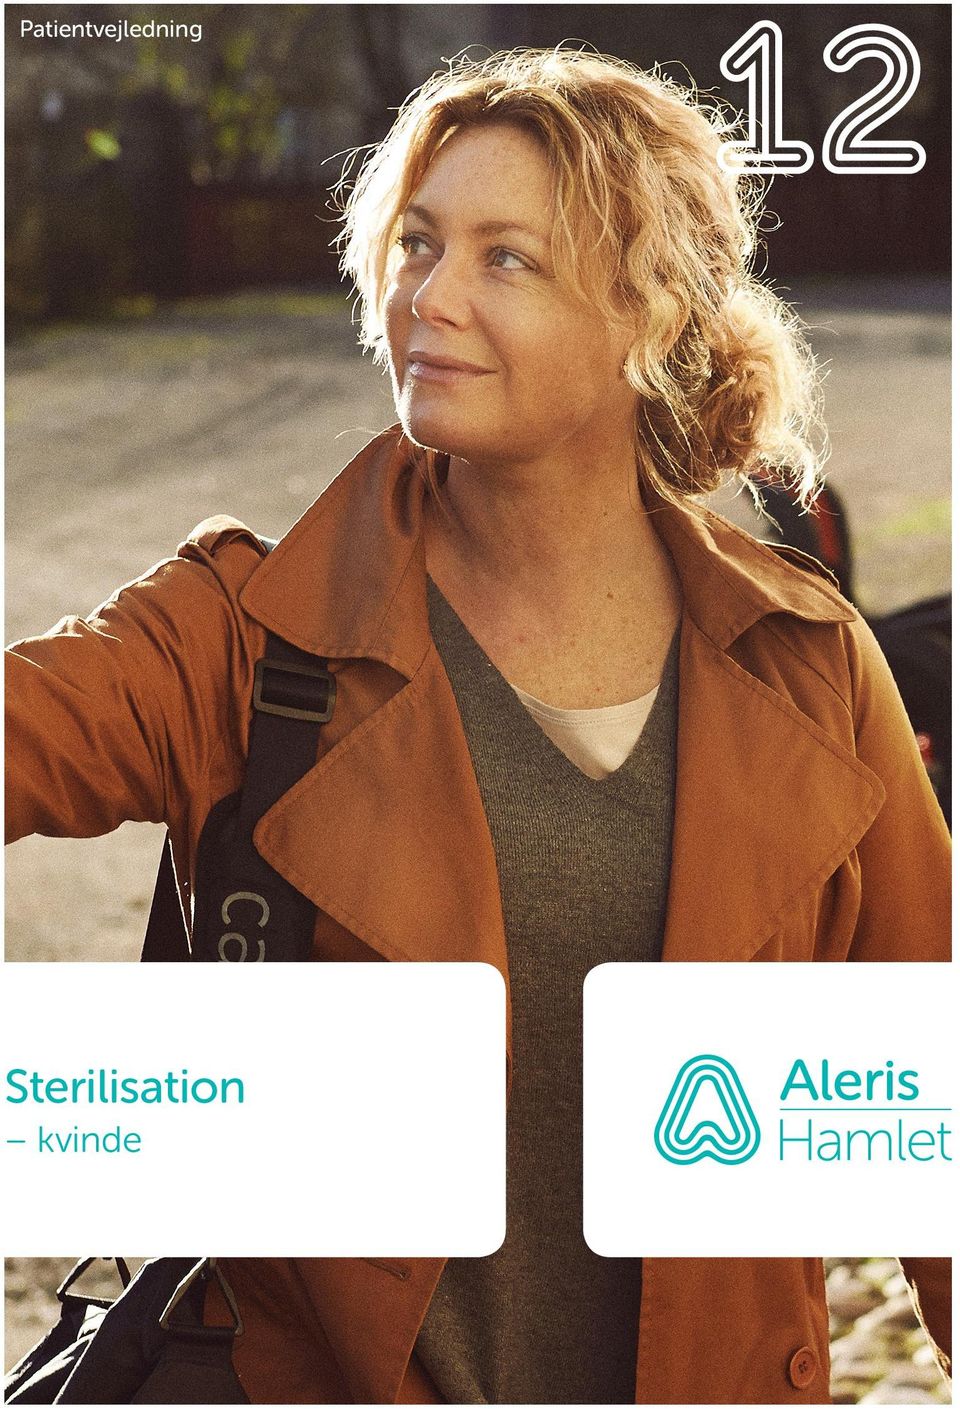 Patientvejledning. Sterilisation. kvinde - PDF Gratis download